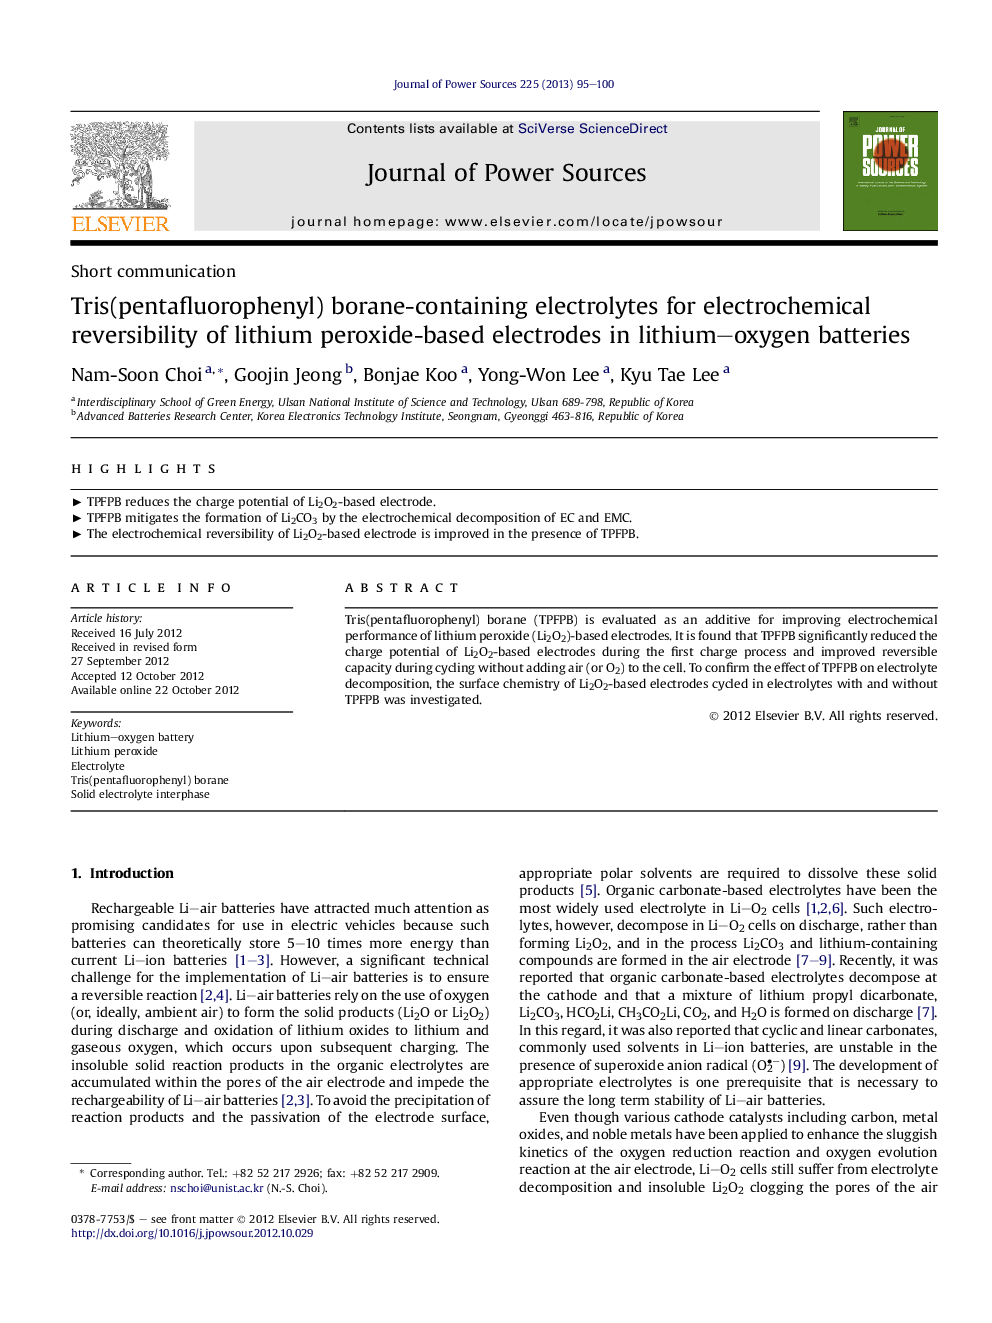 الکترولیت های حاوی بورن تریس (پنتافلوفورفنیل) برای بازگشت الکتروشیمیایی الکترودهای مبتنی بر پتاسیم لیتیوم در باتری های اکسیژن لیتیوم 